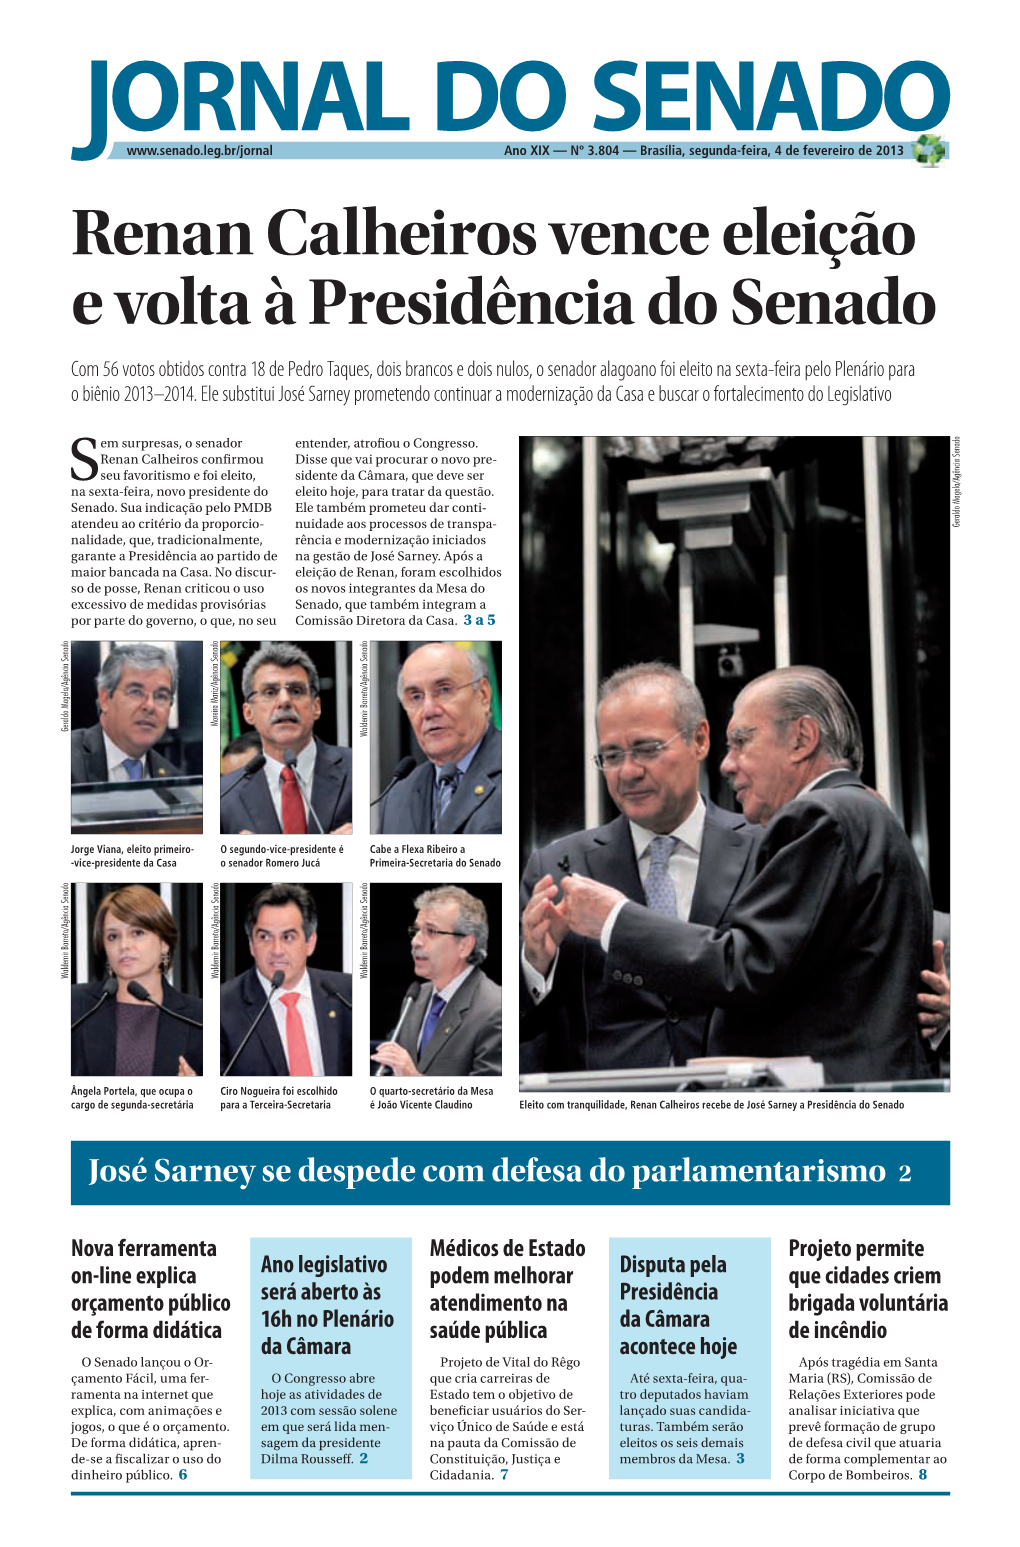 Renan Calheiros Vence Eleição E Volta À Presidência Do Senado